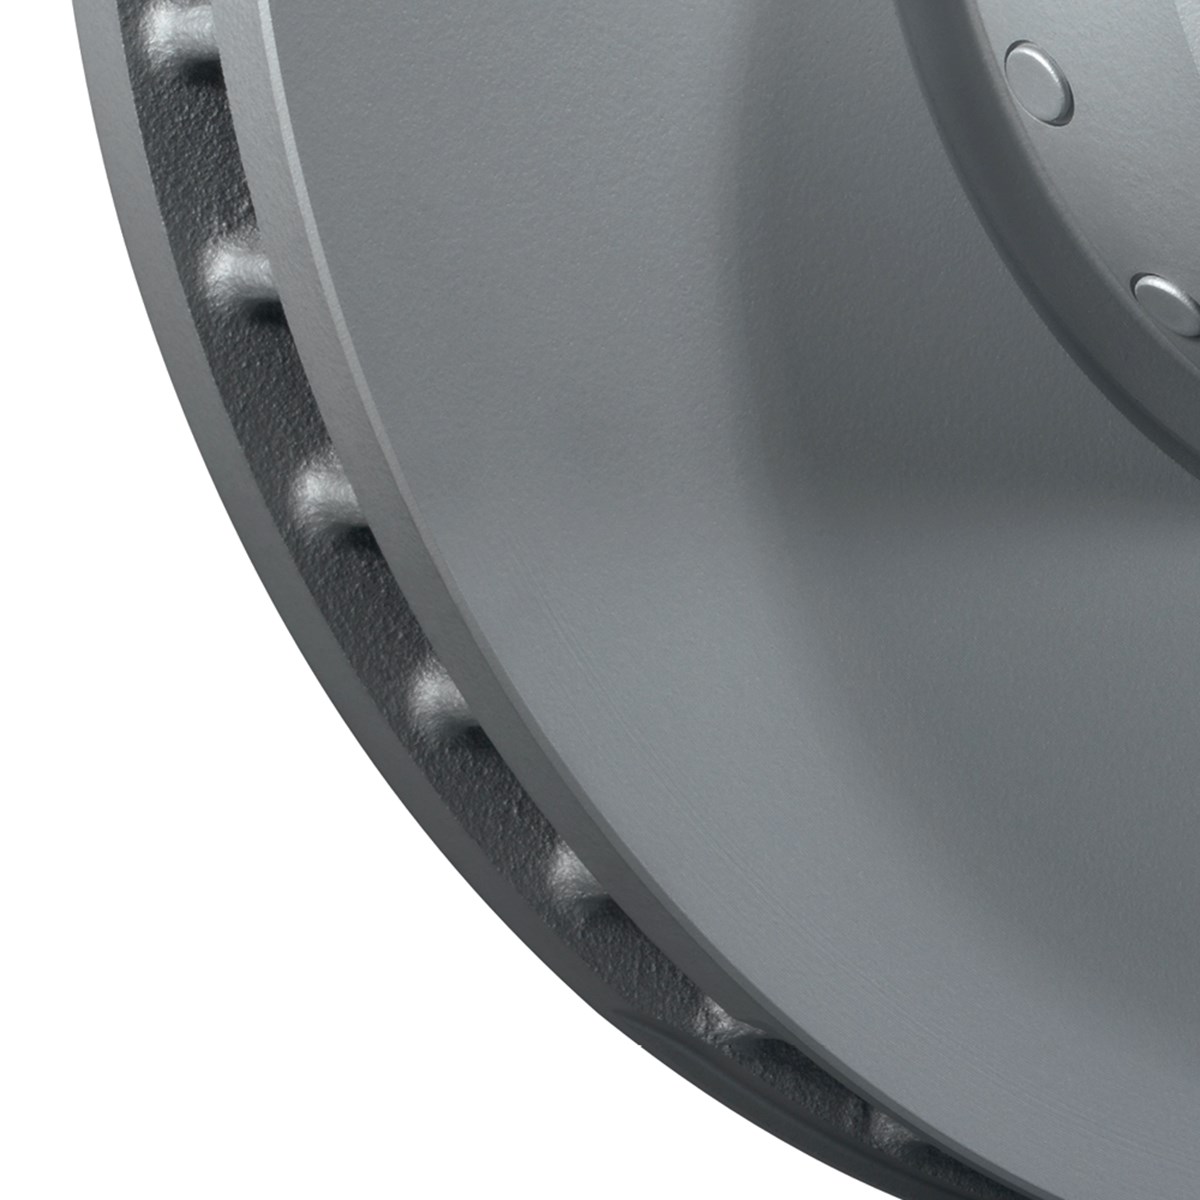 Two-piece brake disc - detail view